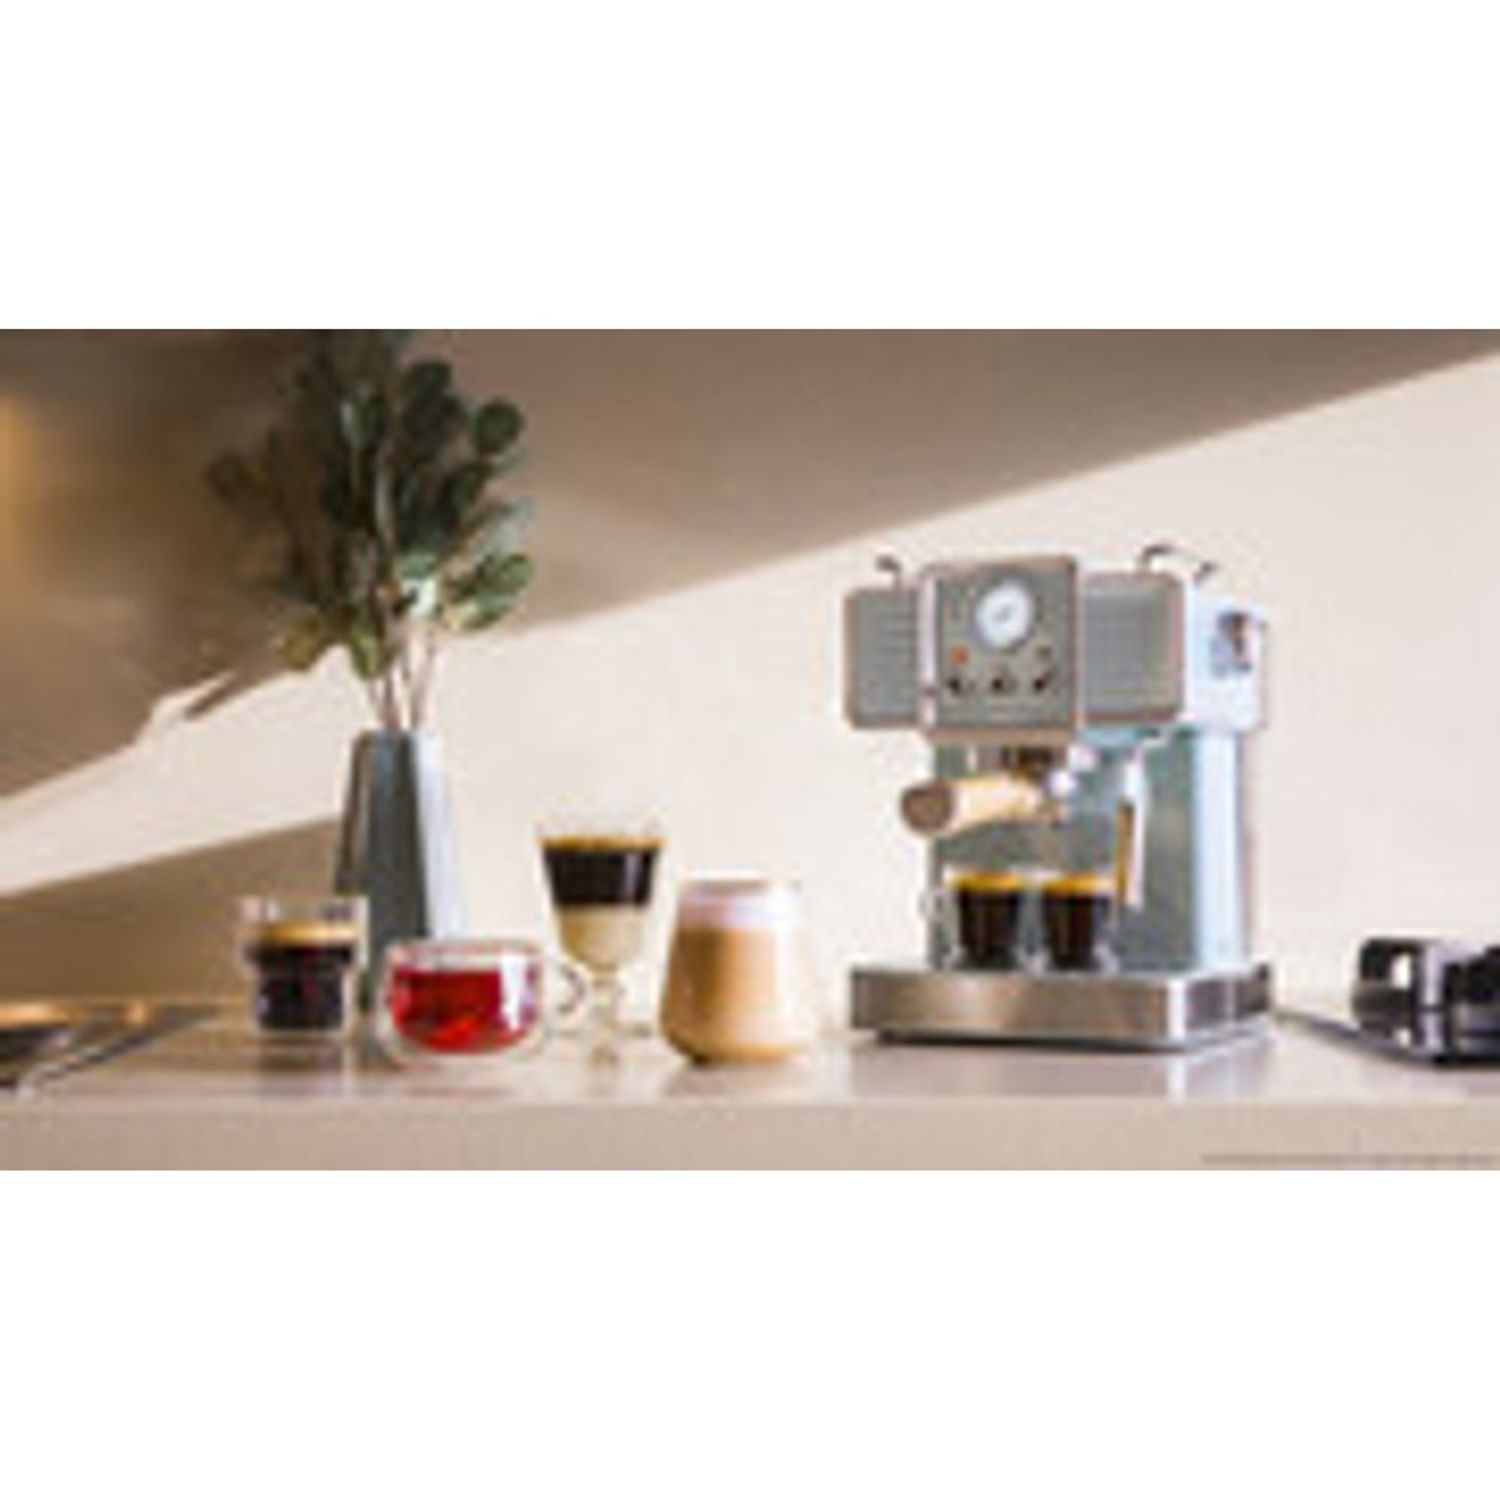 Cafetera Espresso Cecotec Power Espresso 20 Matic Professionale I Oechsle -  Oechsle